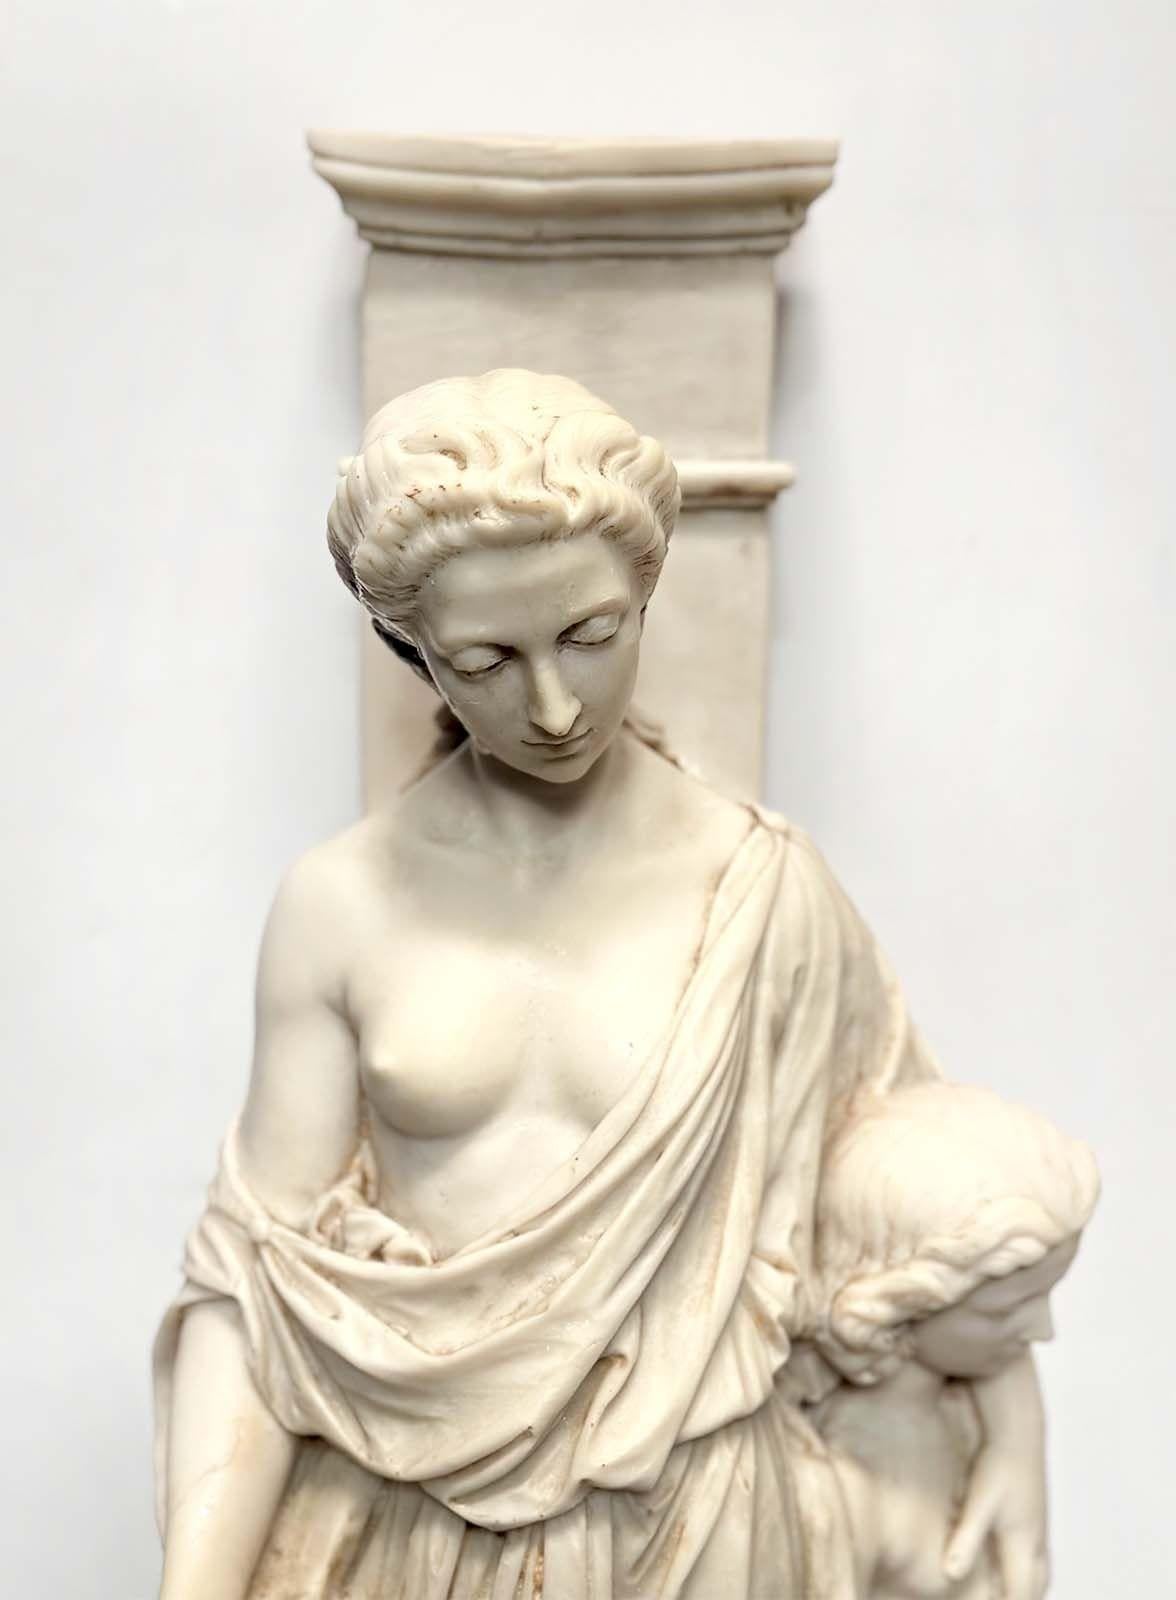 Zwei entzückende Skulpturen aus weißem Gussmarmor, die um 1900 in Italien hergestellt wurden, fangen das Wesen der mütterlichen Freude und die Unschuld der Kindheit ein. Auf einer Skulptur umarmt eine strahlende Frau zärtlich ein kleines Mädchen mit